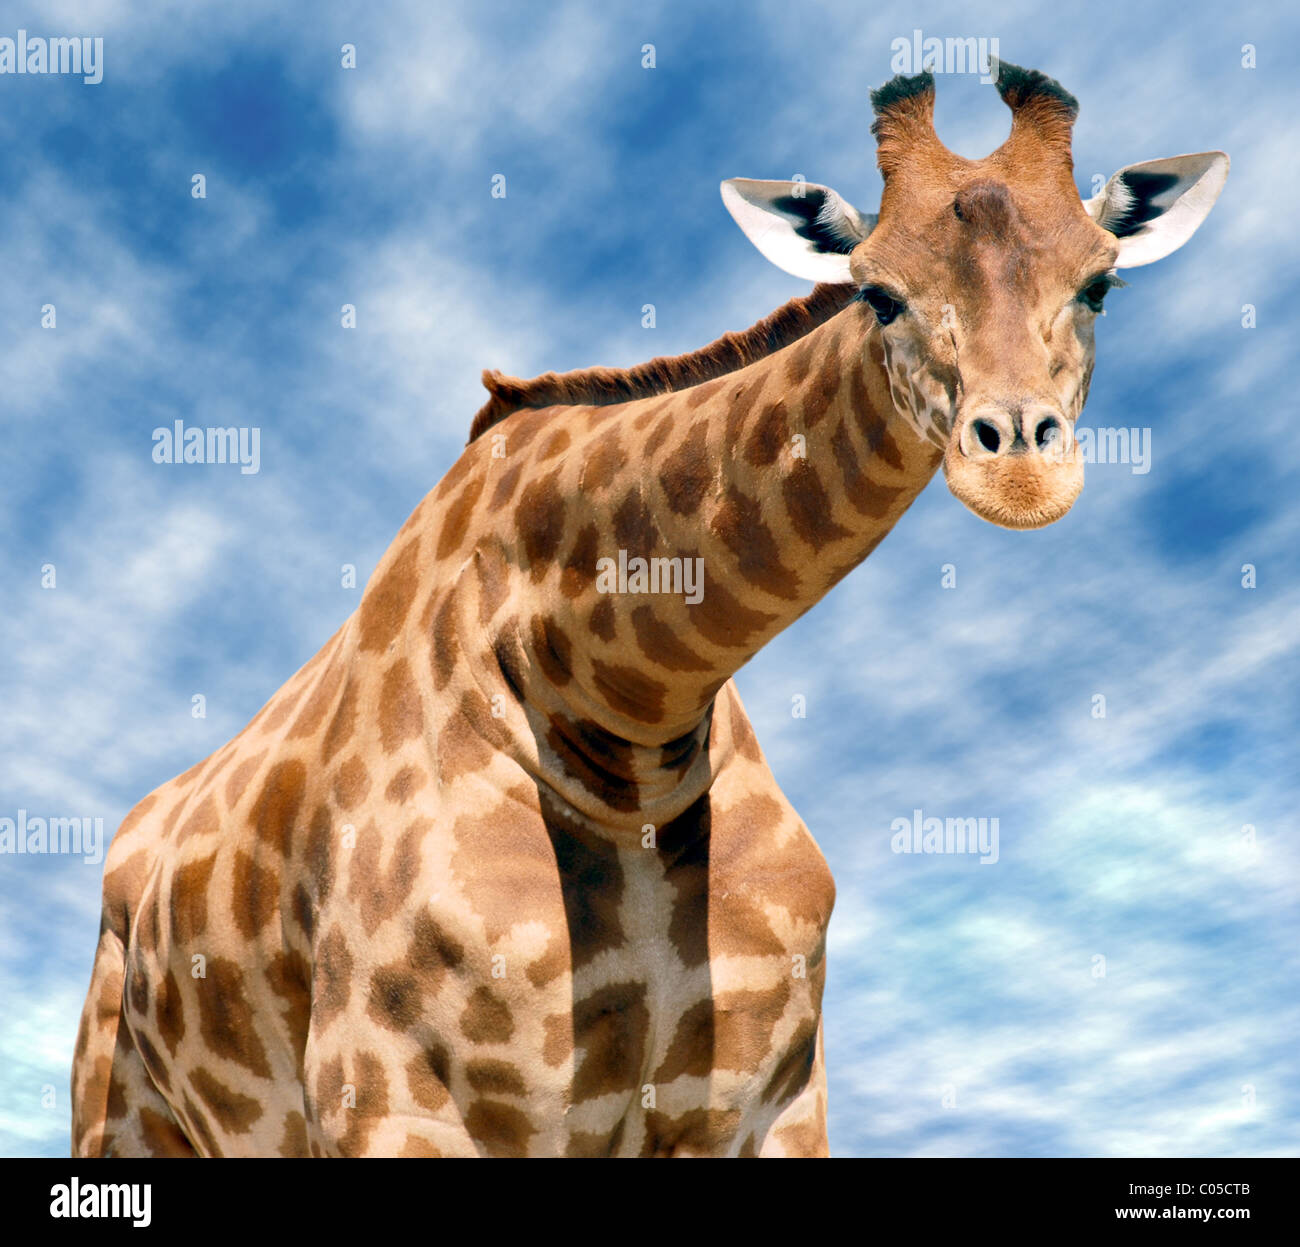 Closeup face view of Giraffe (Camelopardalis) under a cloudy blue sky Stock Photo